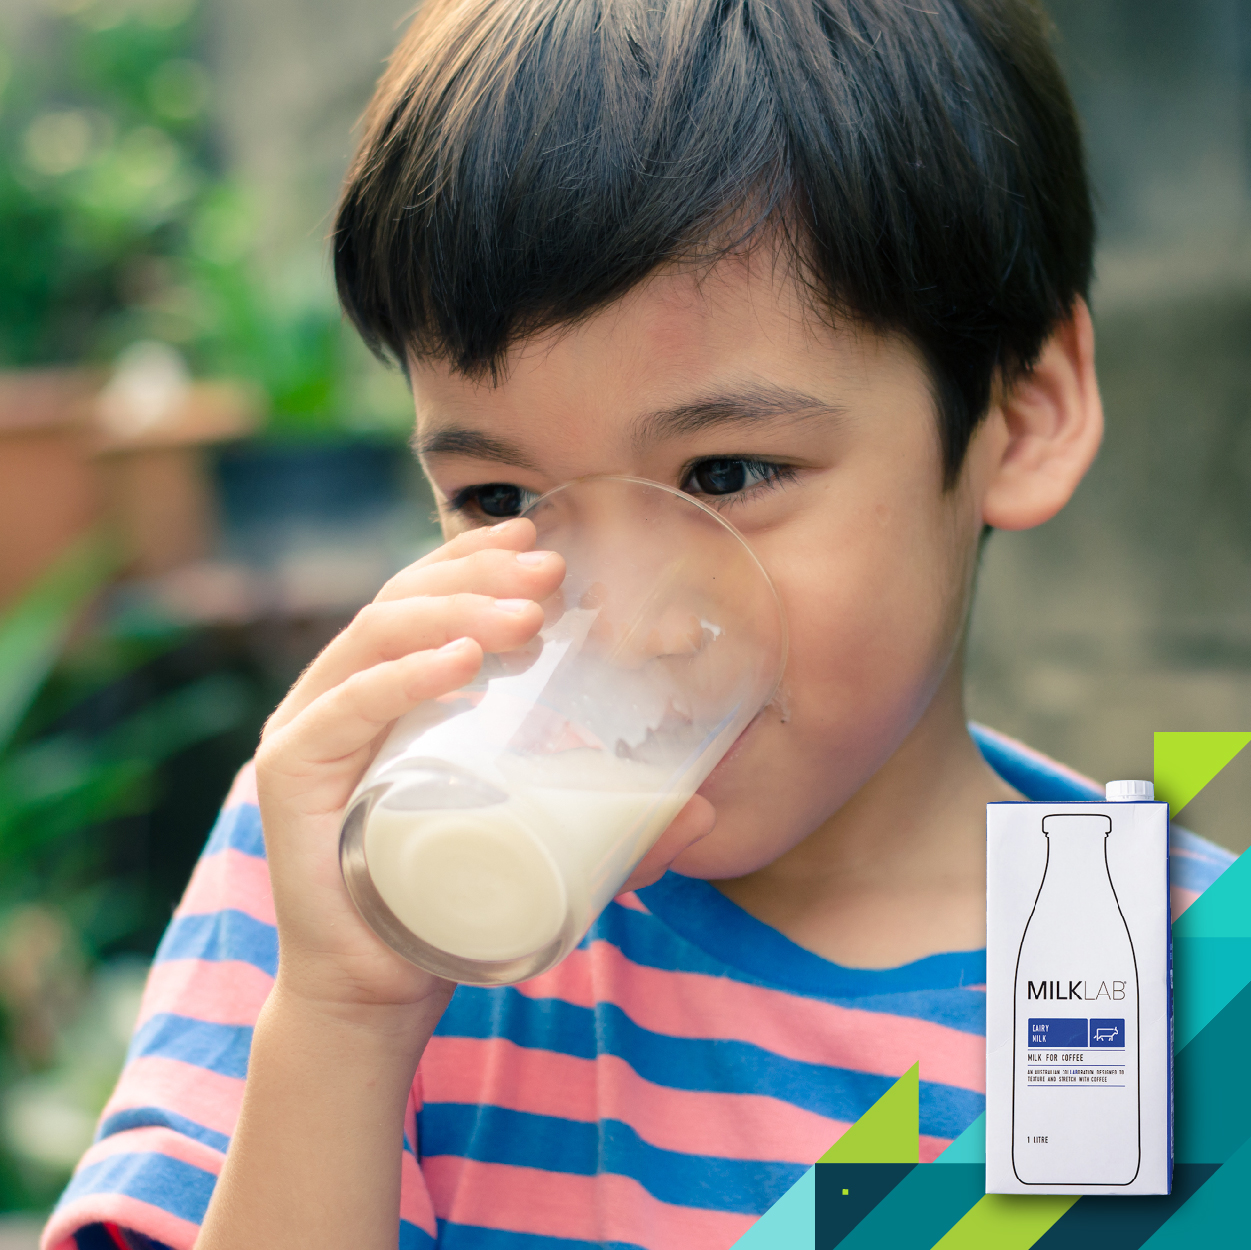 MILKLAB  嚴選全脂保久乳  澳洲原裝進口榮獲多項乳品大獎